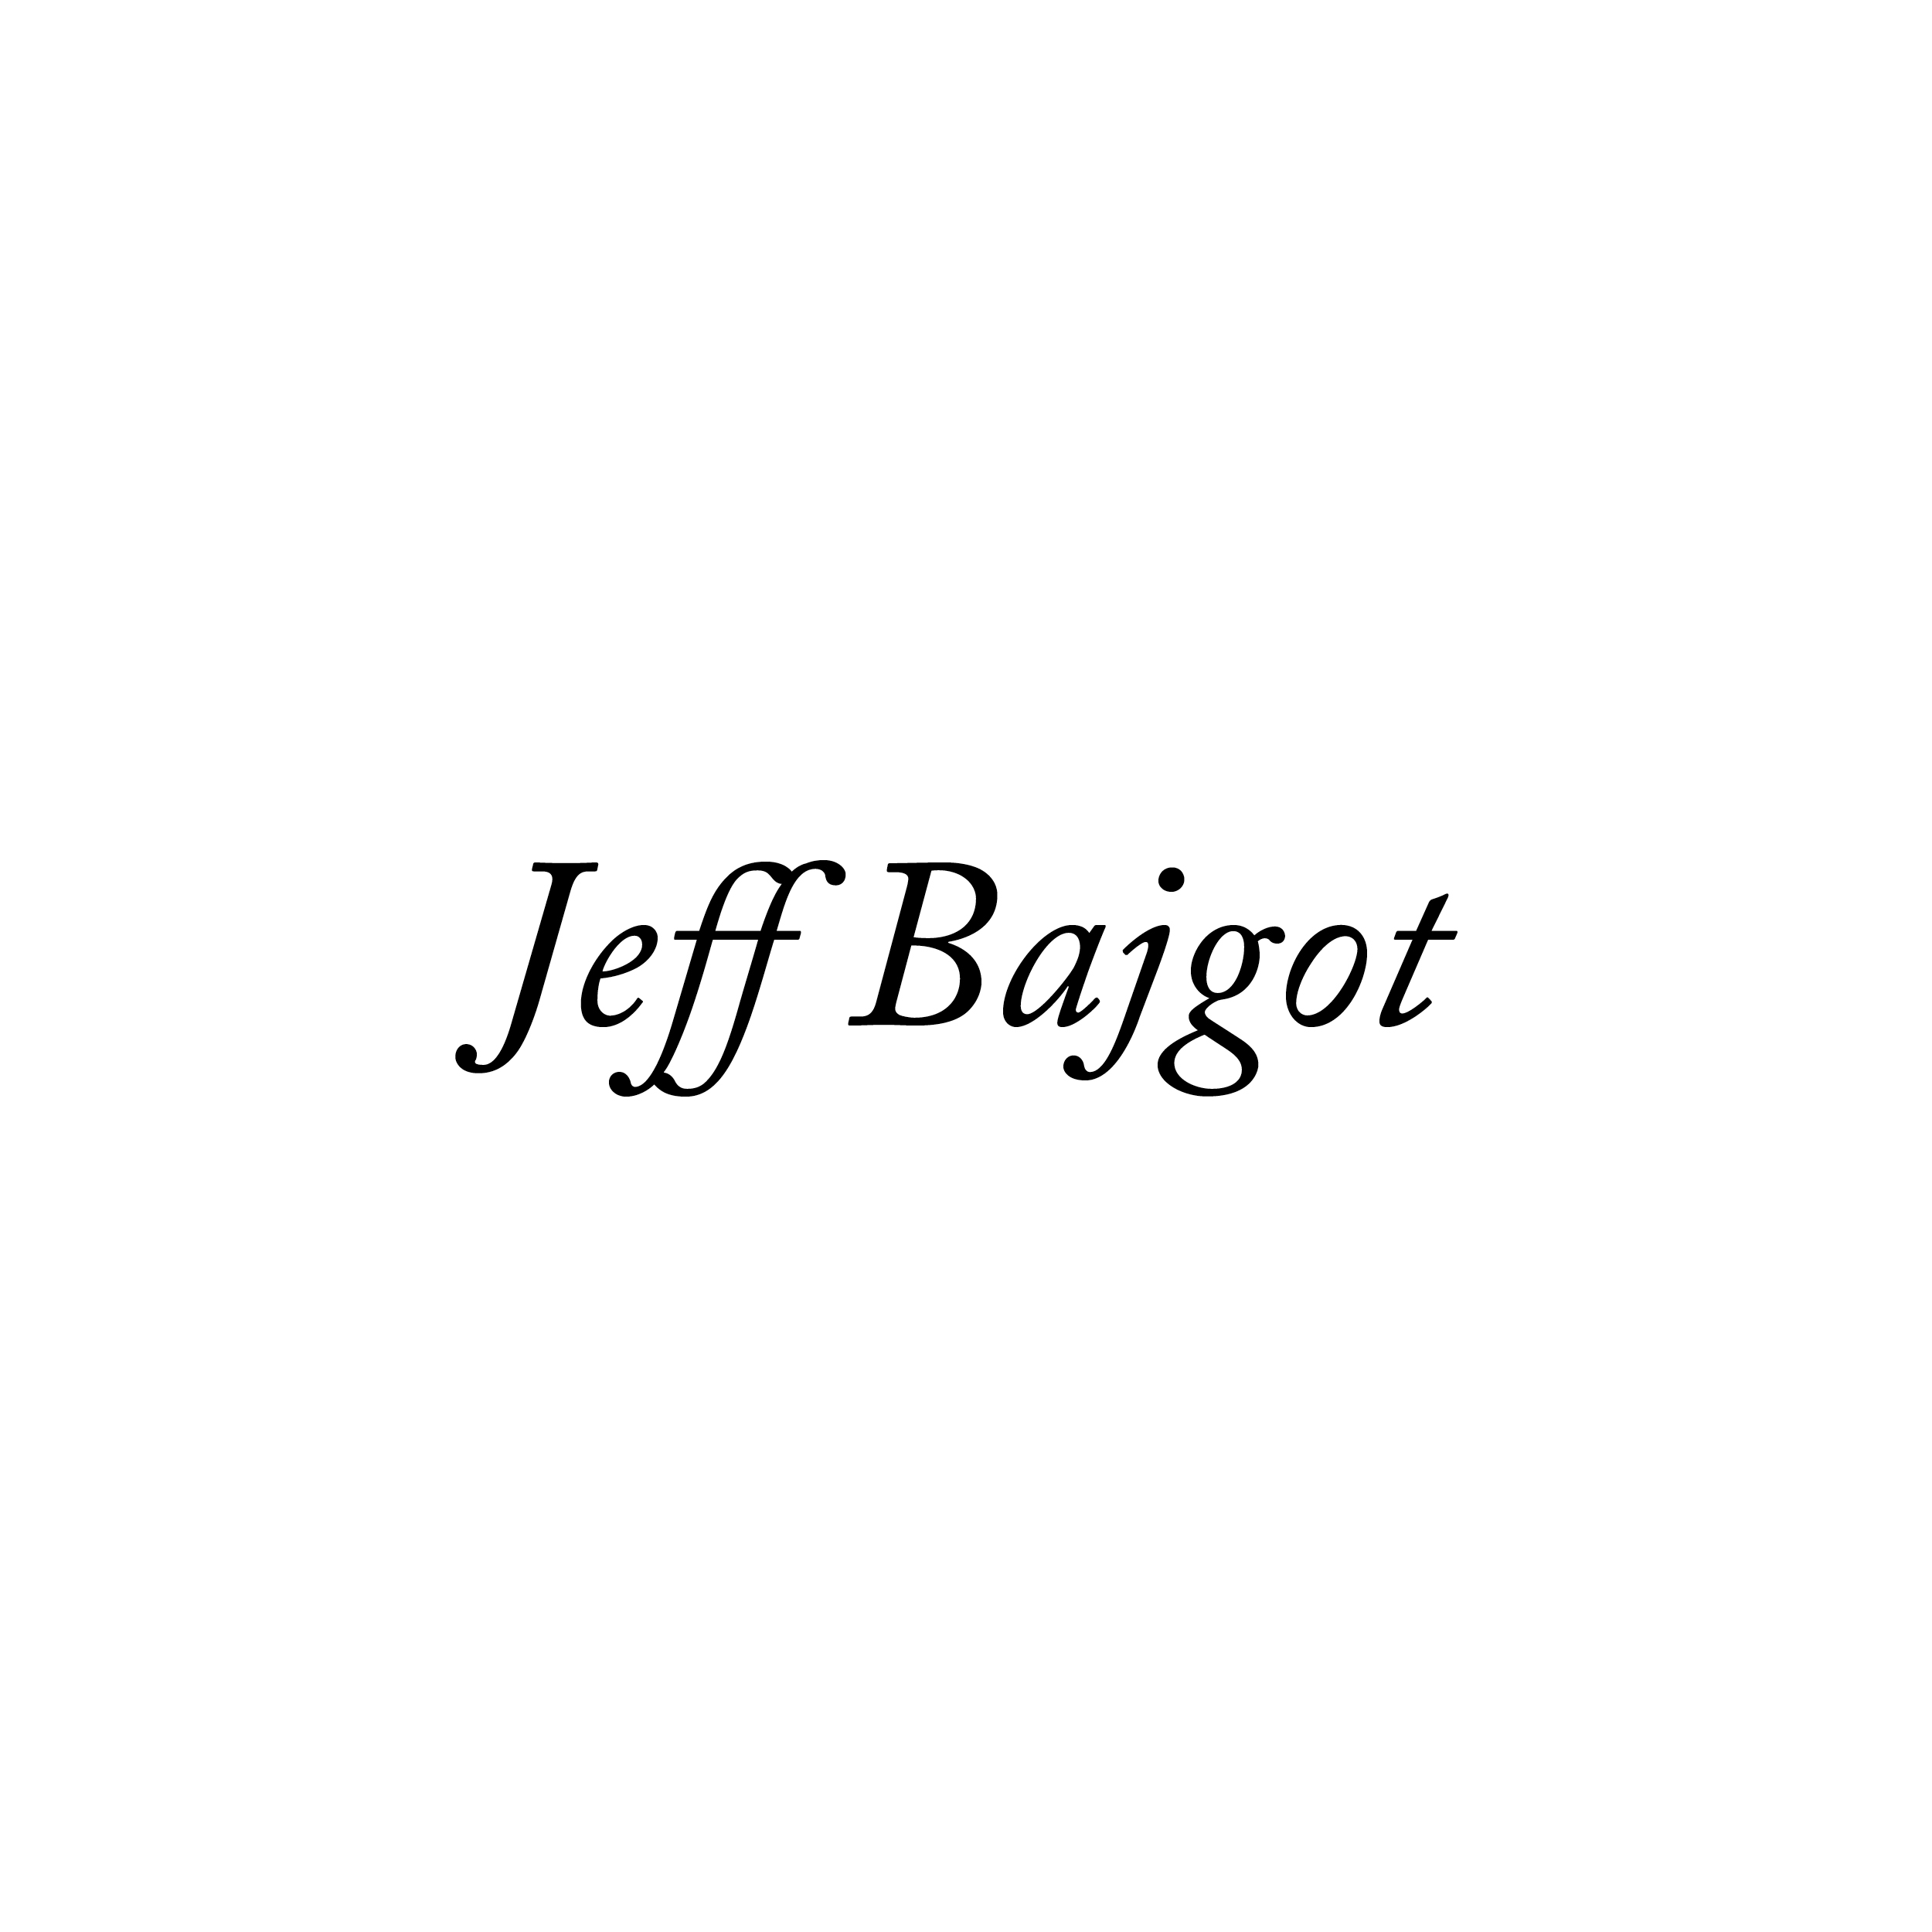 Jeff Bajgot